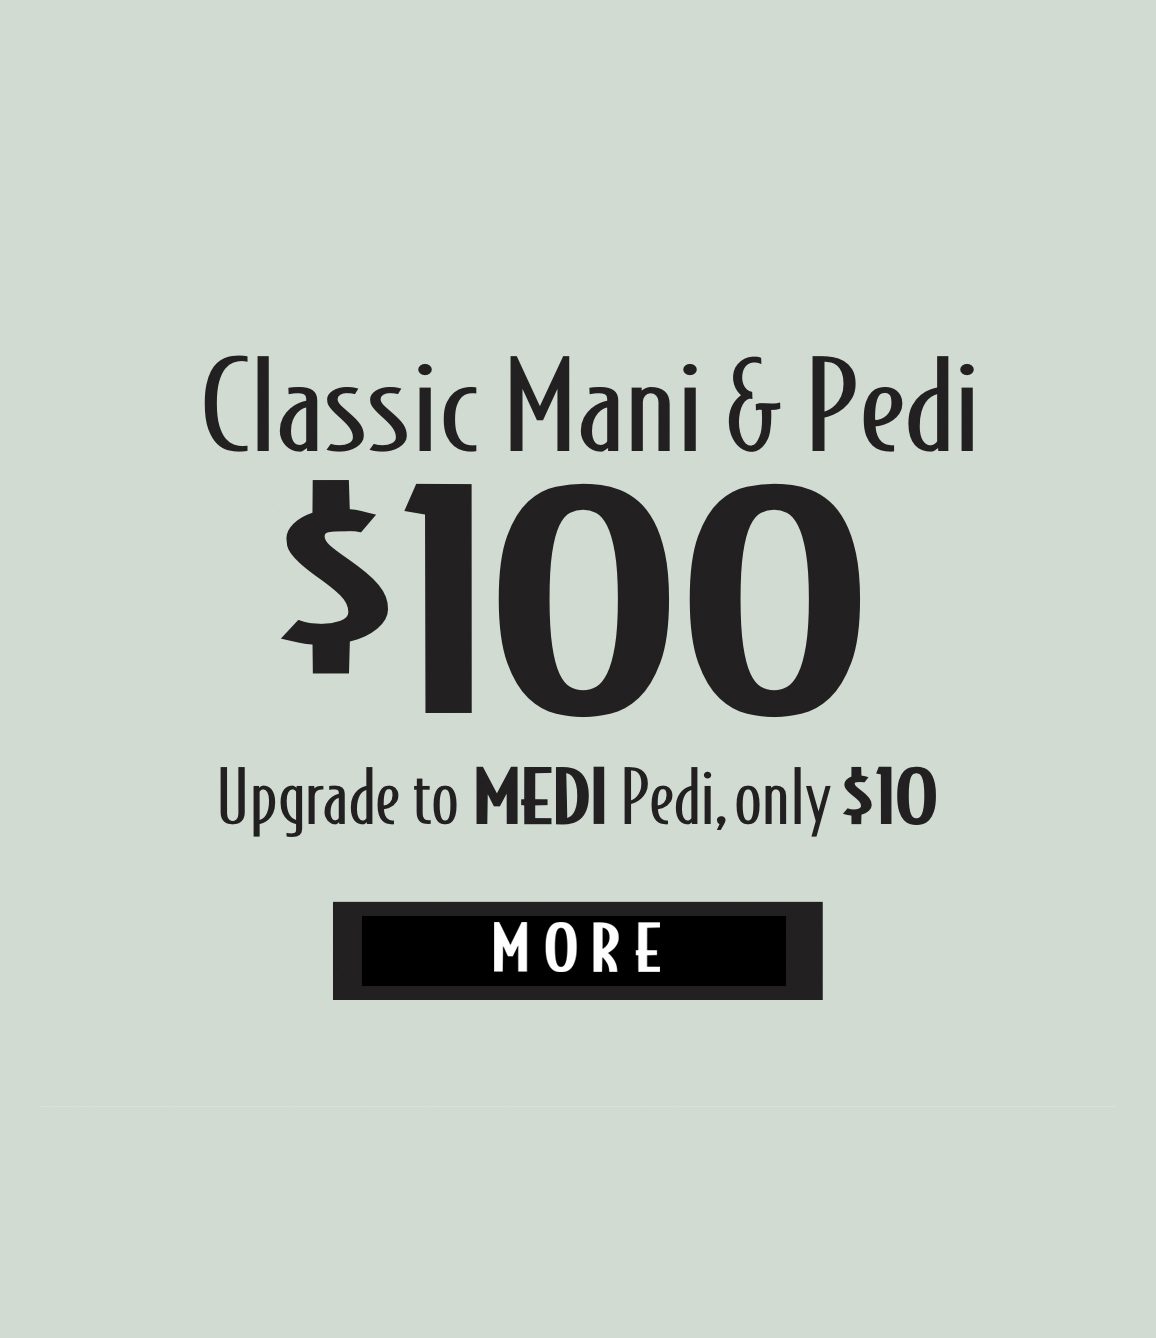 Classic Mani & Pedi - $100